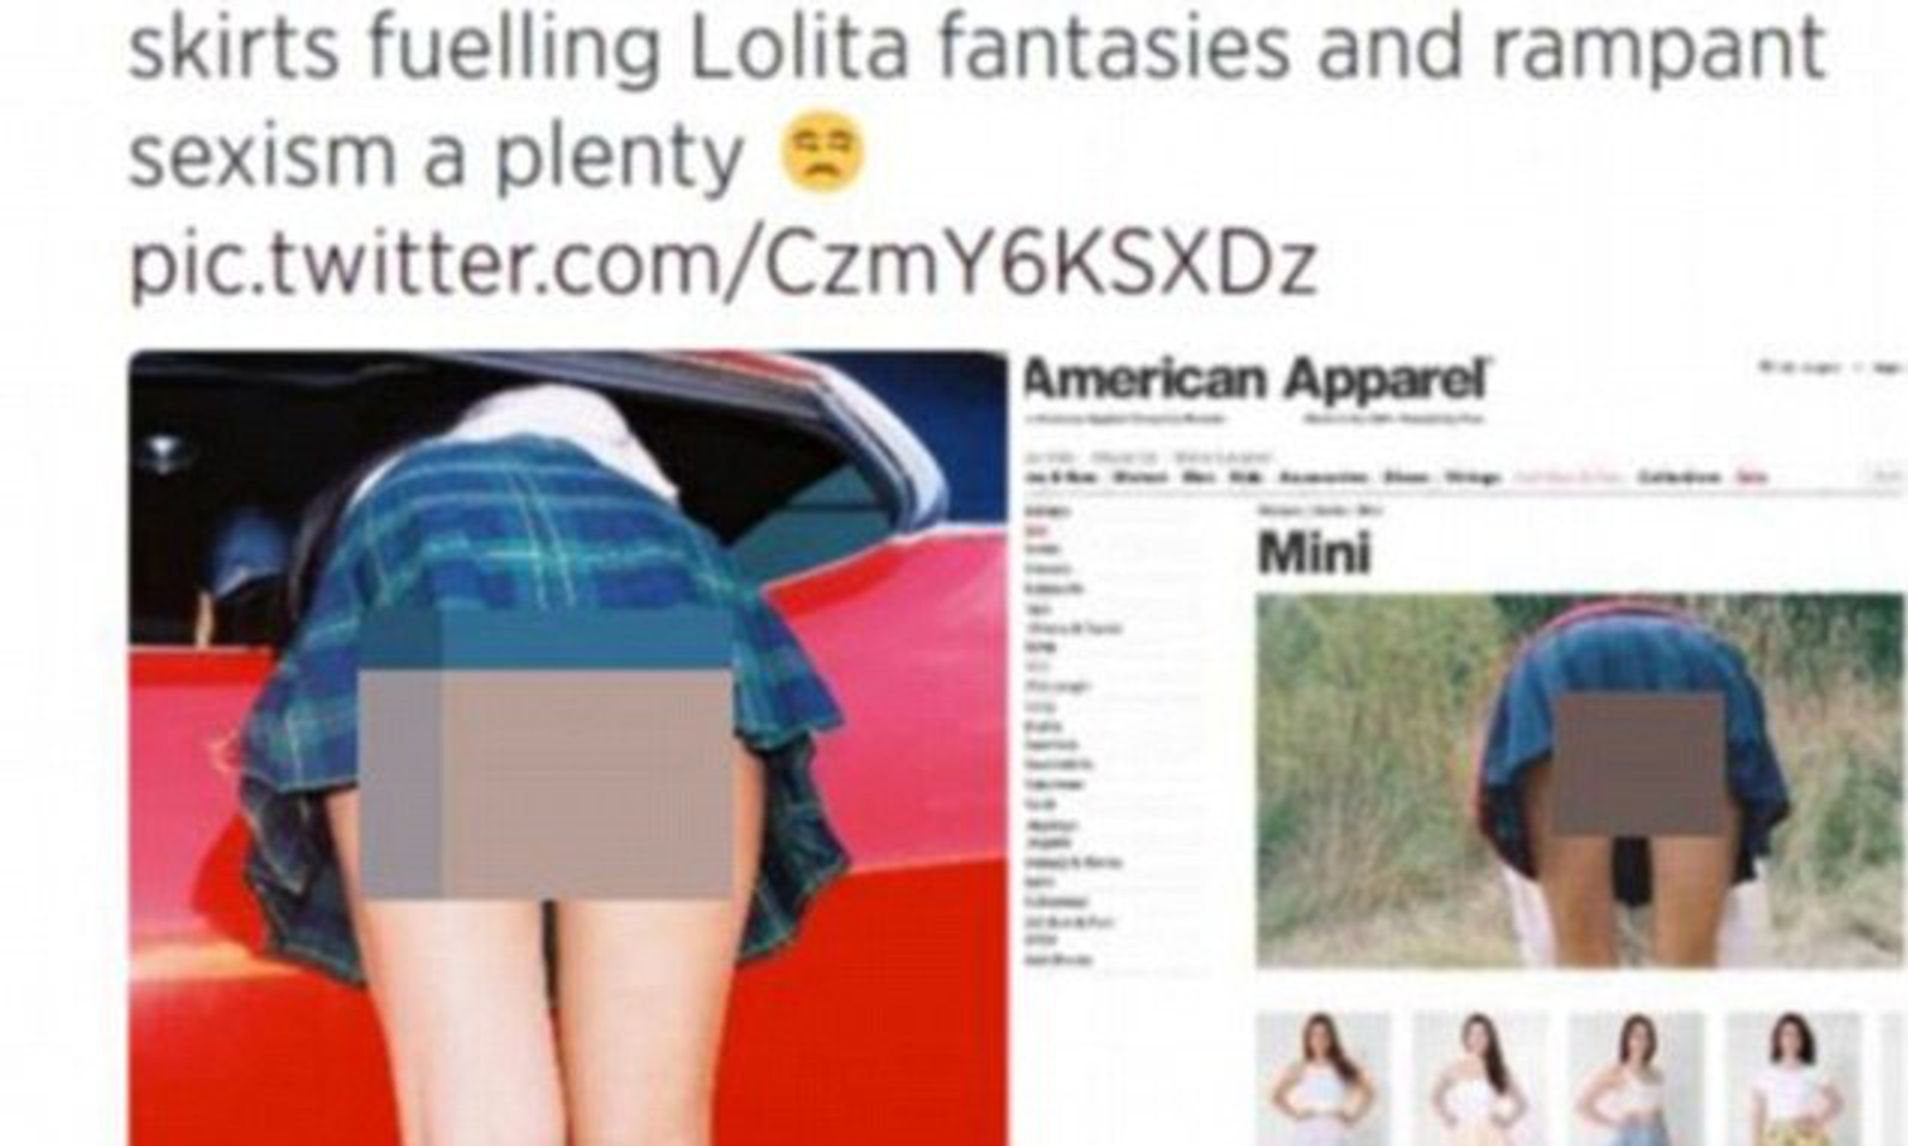 dean jowett add girls bent over skirts photo